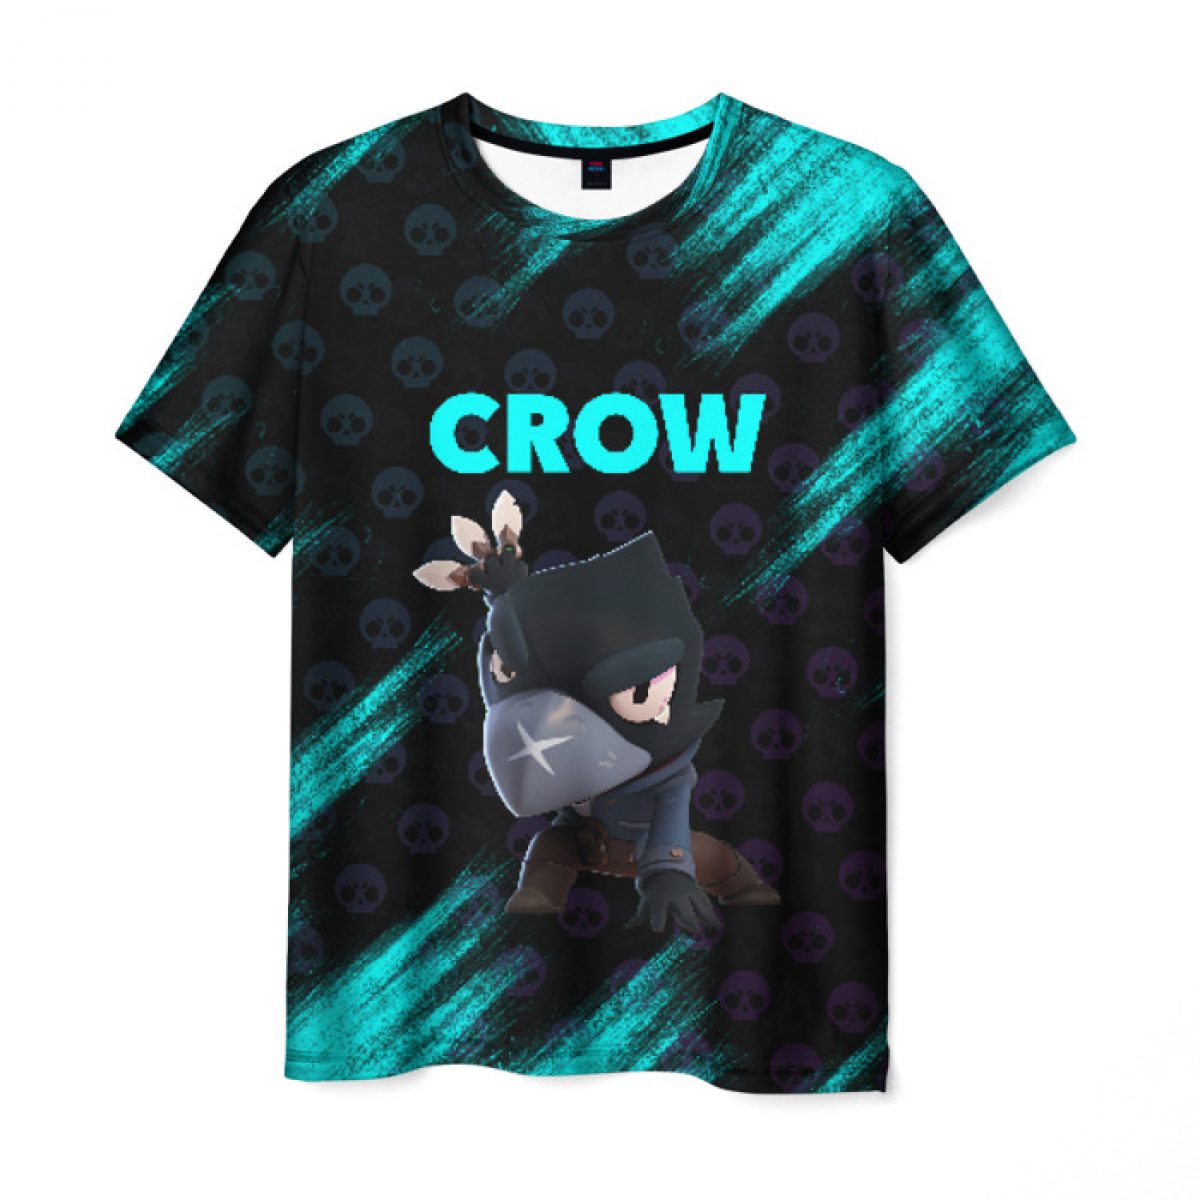 Buy Men S T Shirt Merch Crow Game Image Brawl Stars Idolstore - brawl stars merch with crow